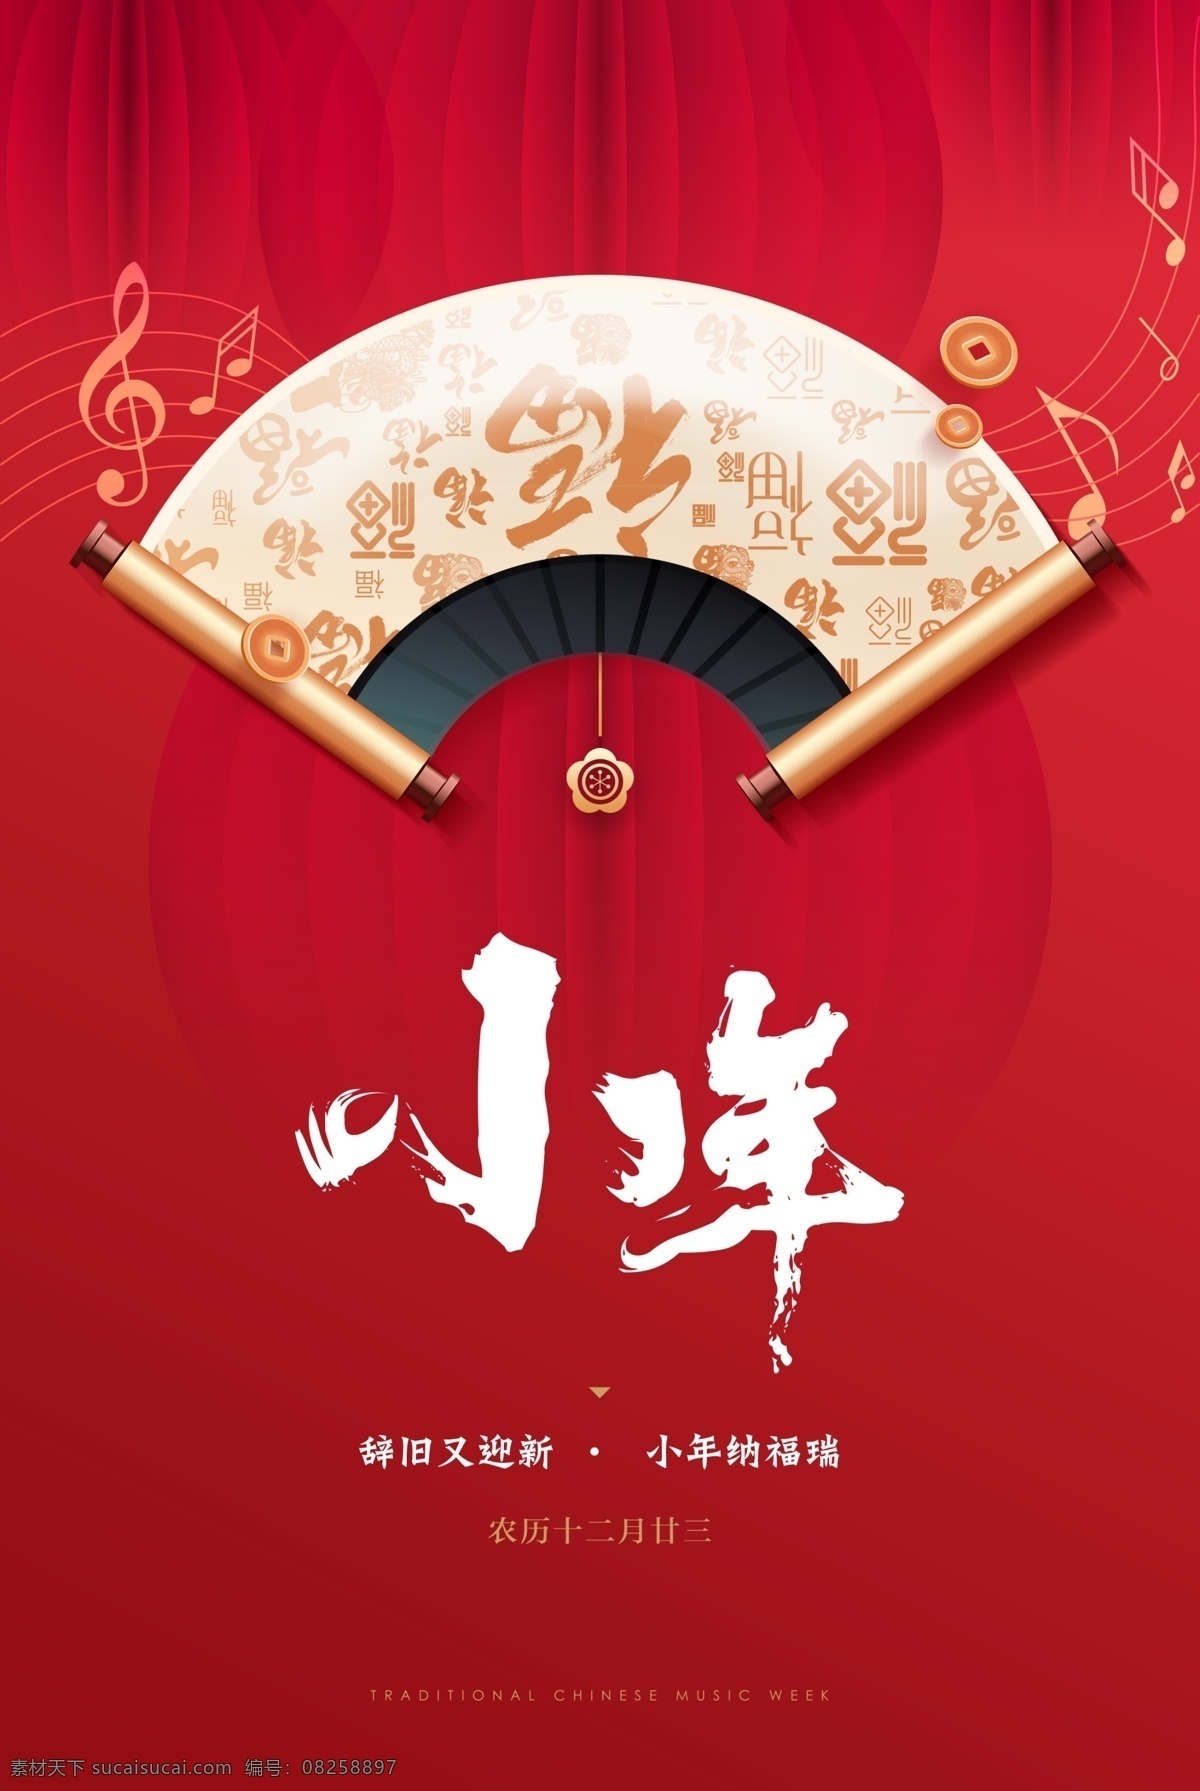 小年海报图片 小年 海报 过年 春节 卷轴 红色 背景 音乐 喜庆 欢乐 福 传统 新年 过节 分层